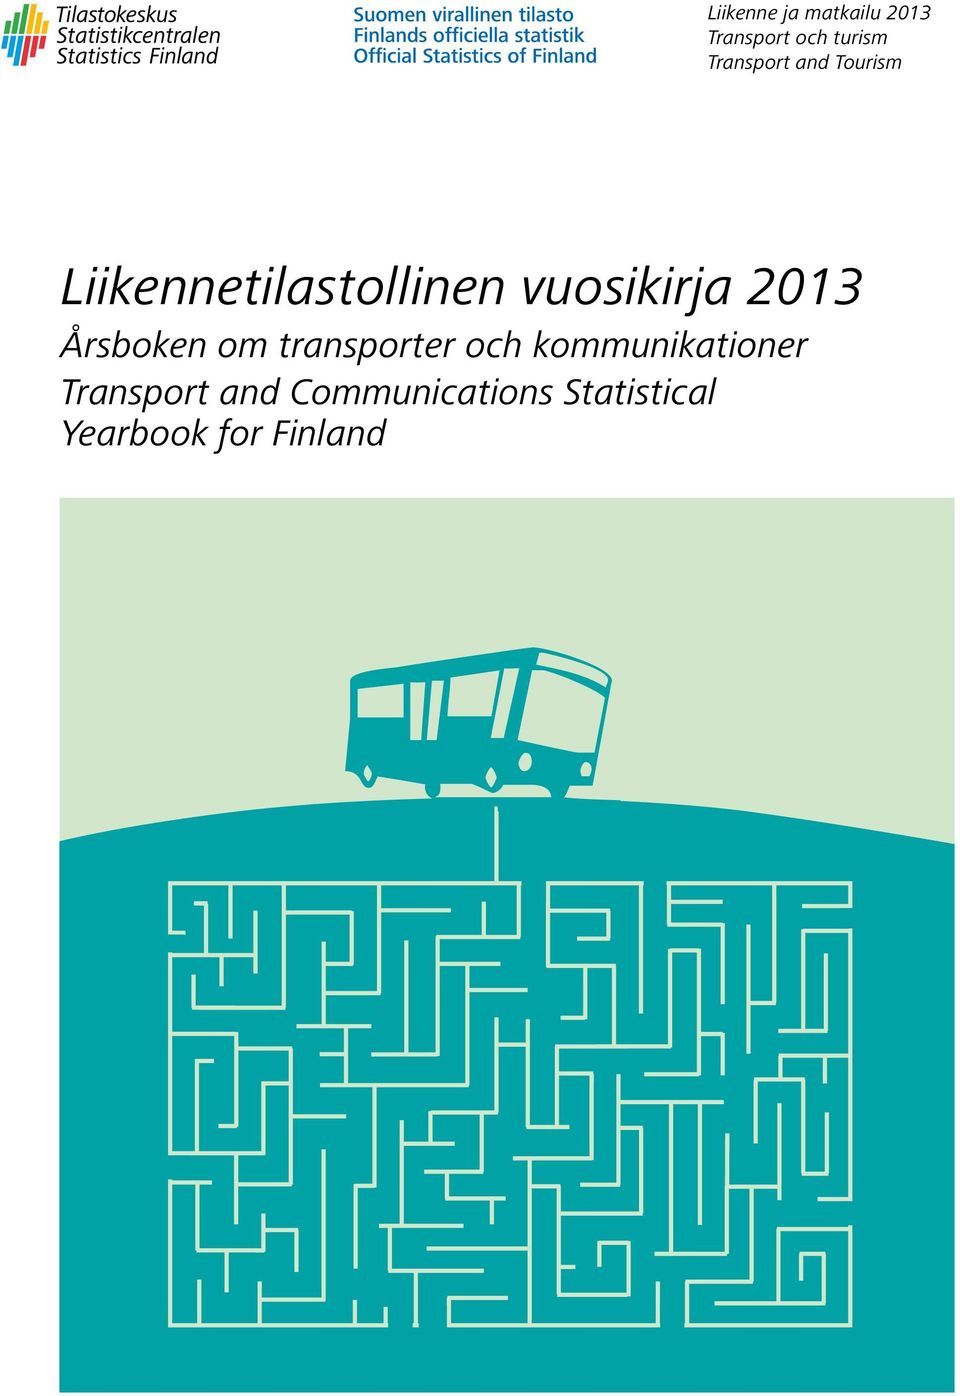 vuosikirja 2013 Årsboken om transporter och